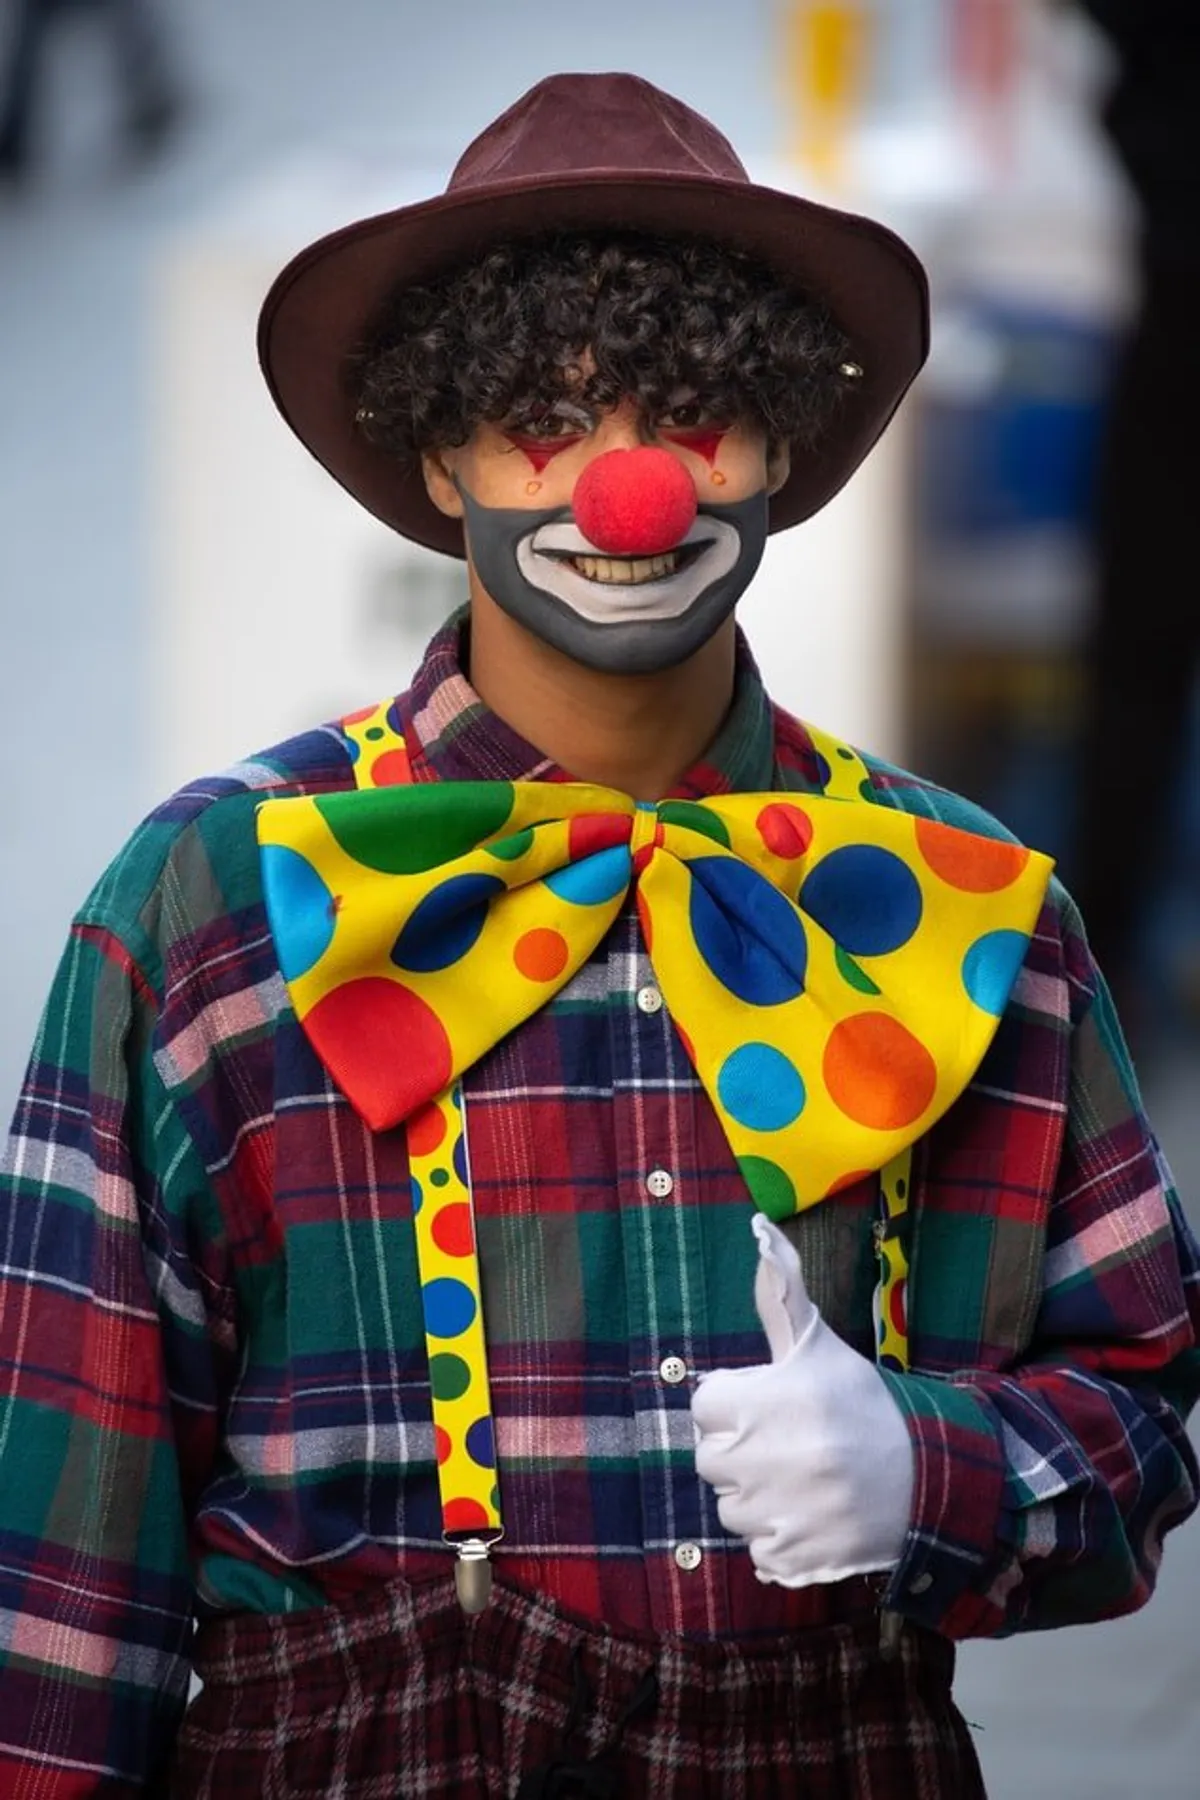 Le clown à la fête d'anniversaire | Source : Unsplash